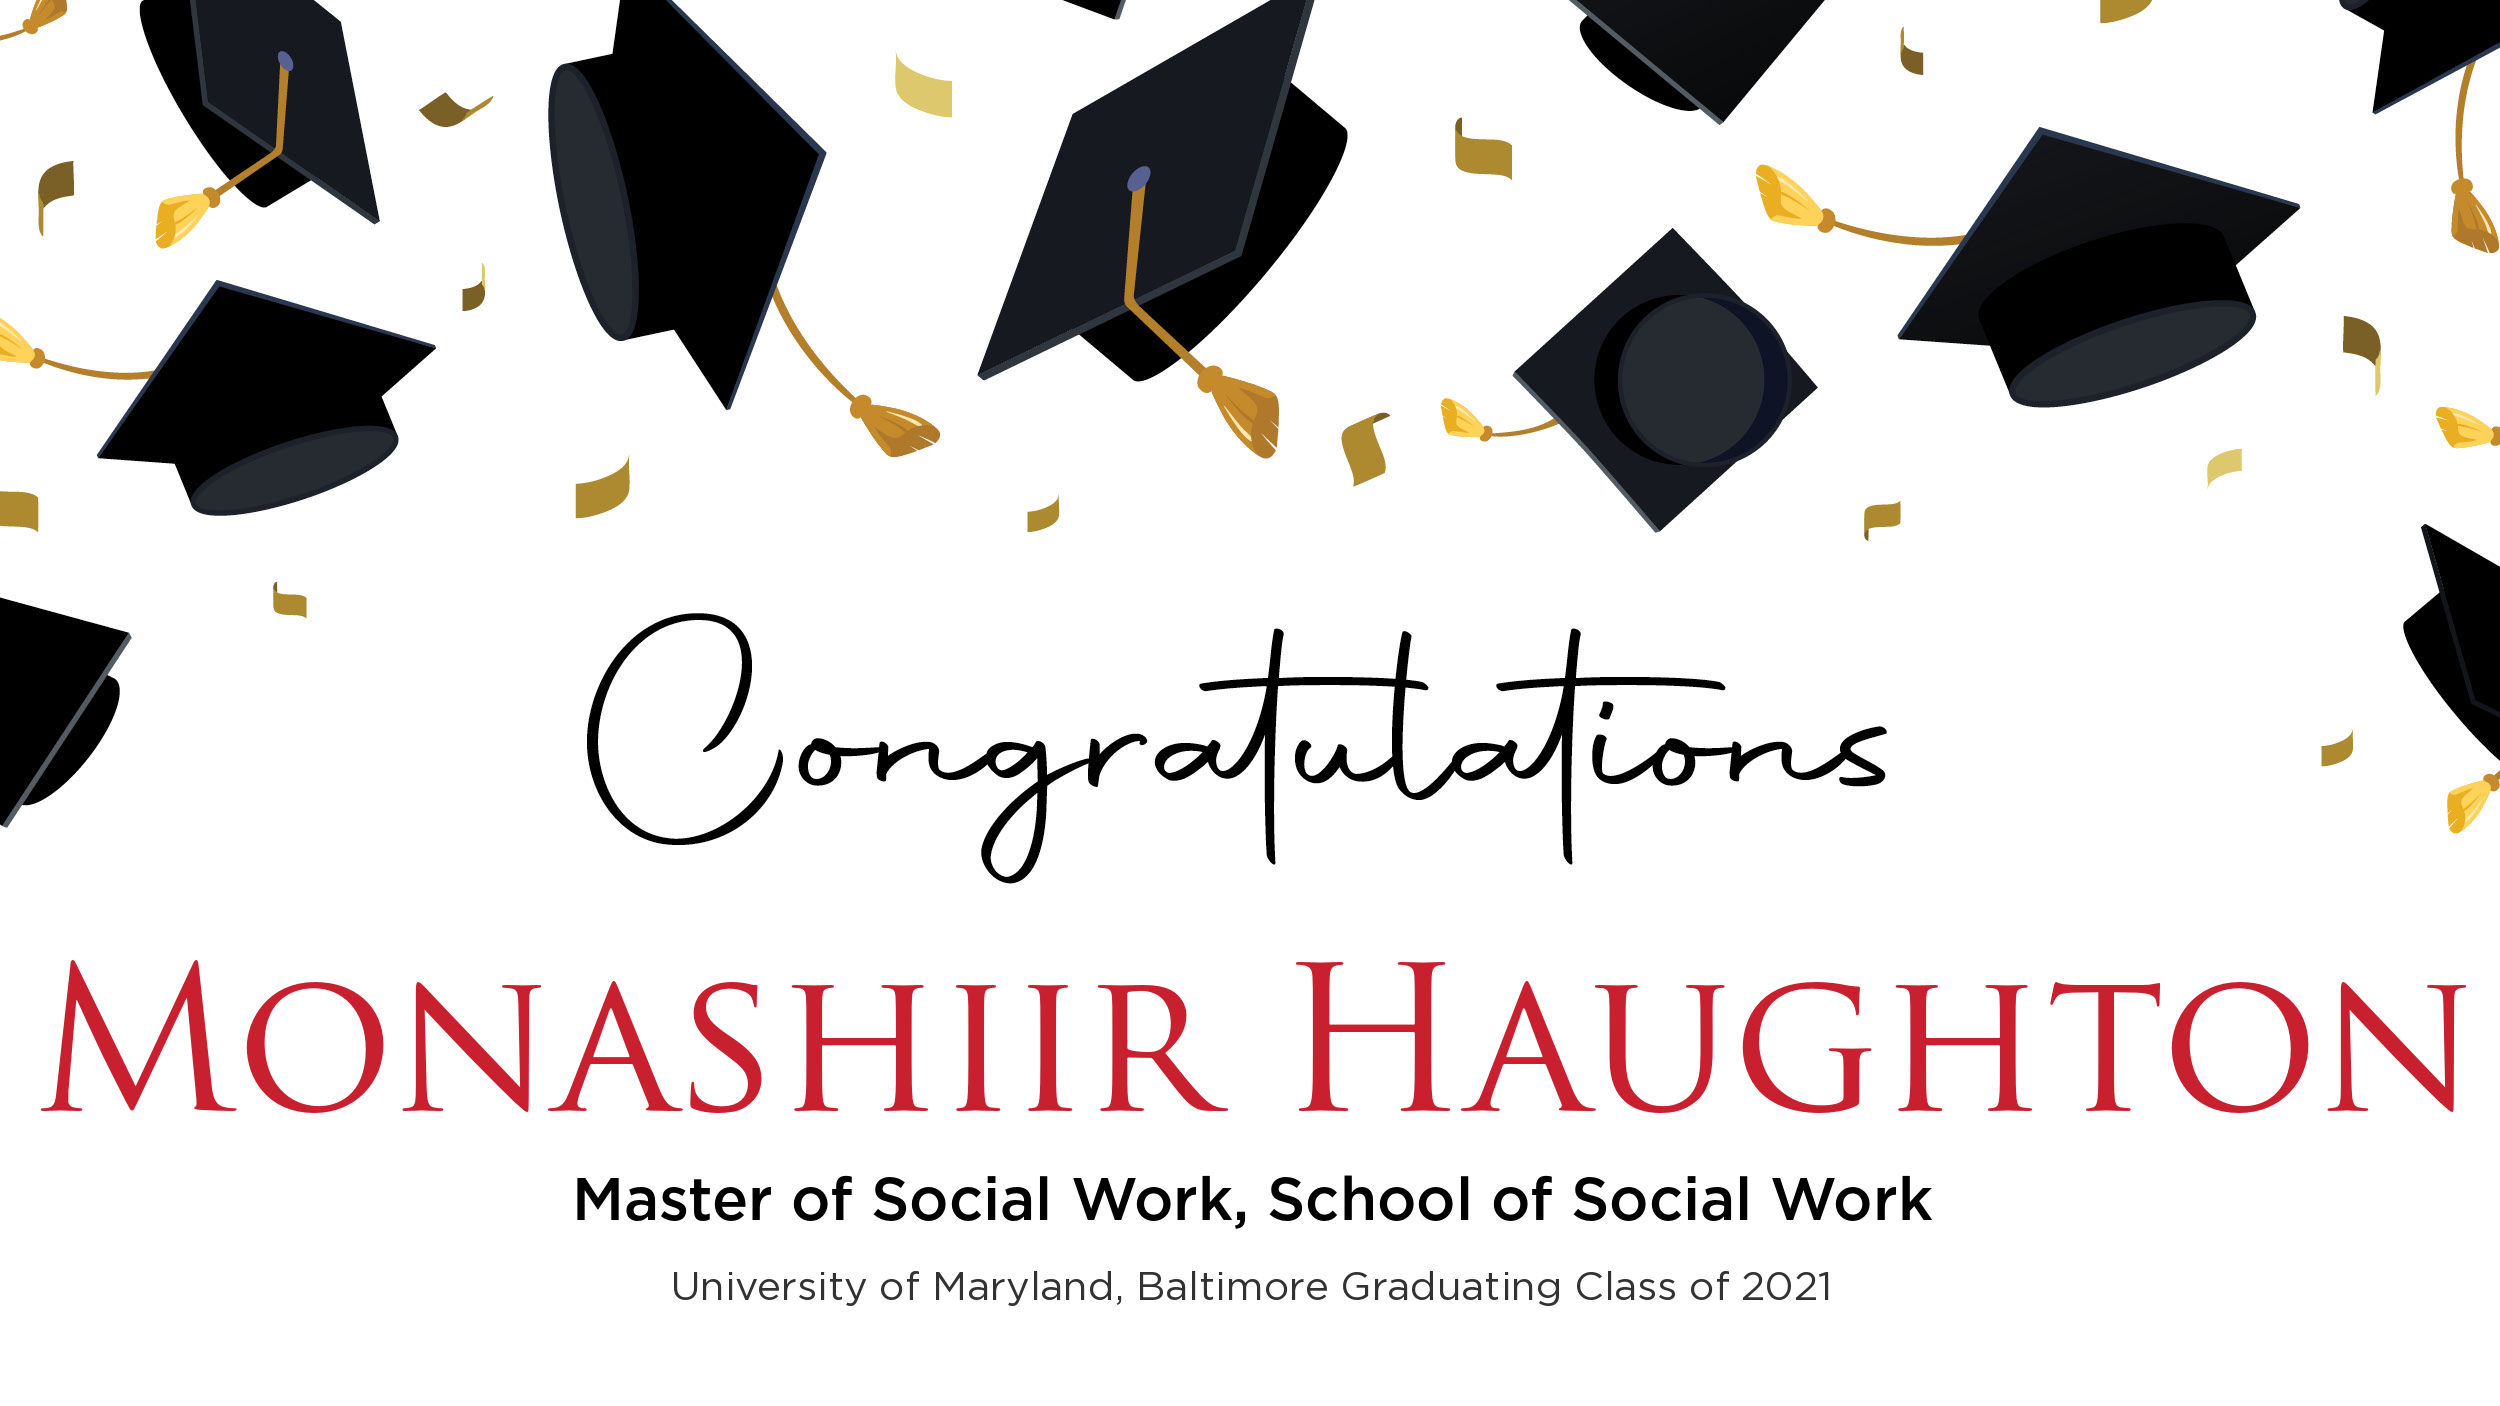 Congratulations Monashiir Haughton, Master of Social Work